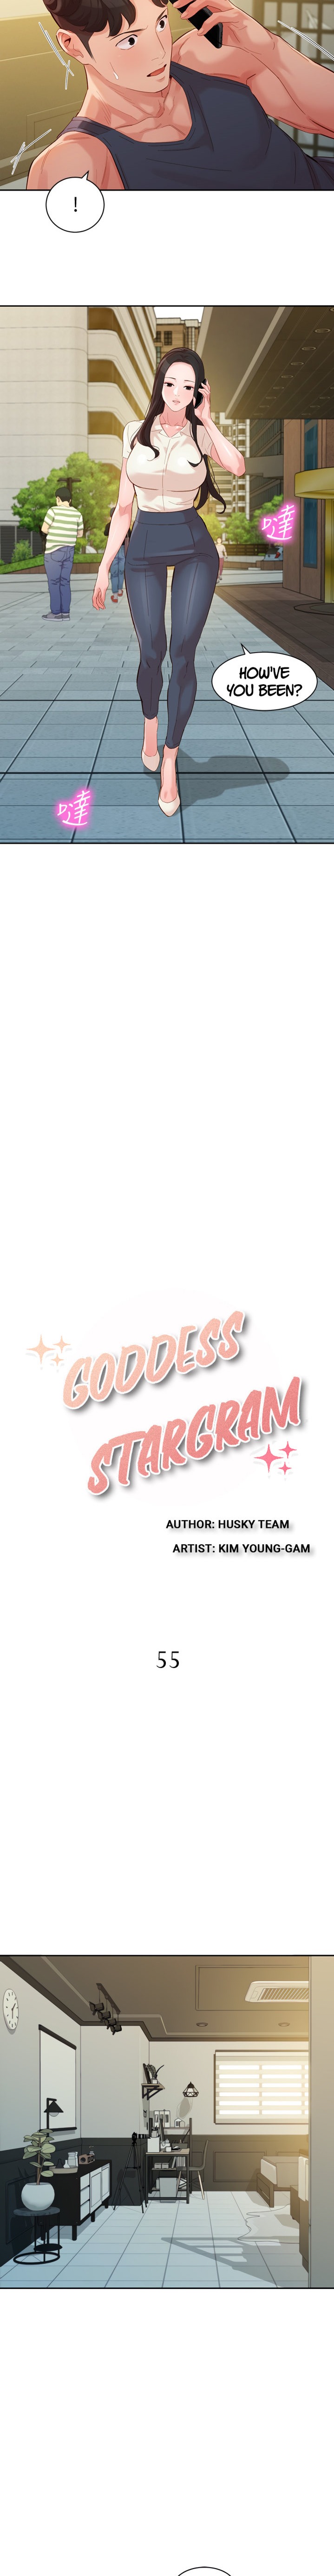 Stargram Goddess - Chapter 55 Page 2